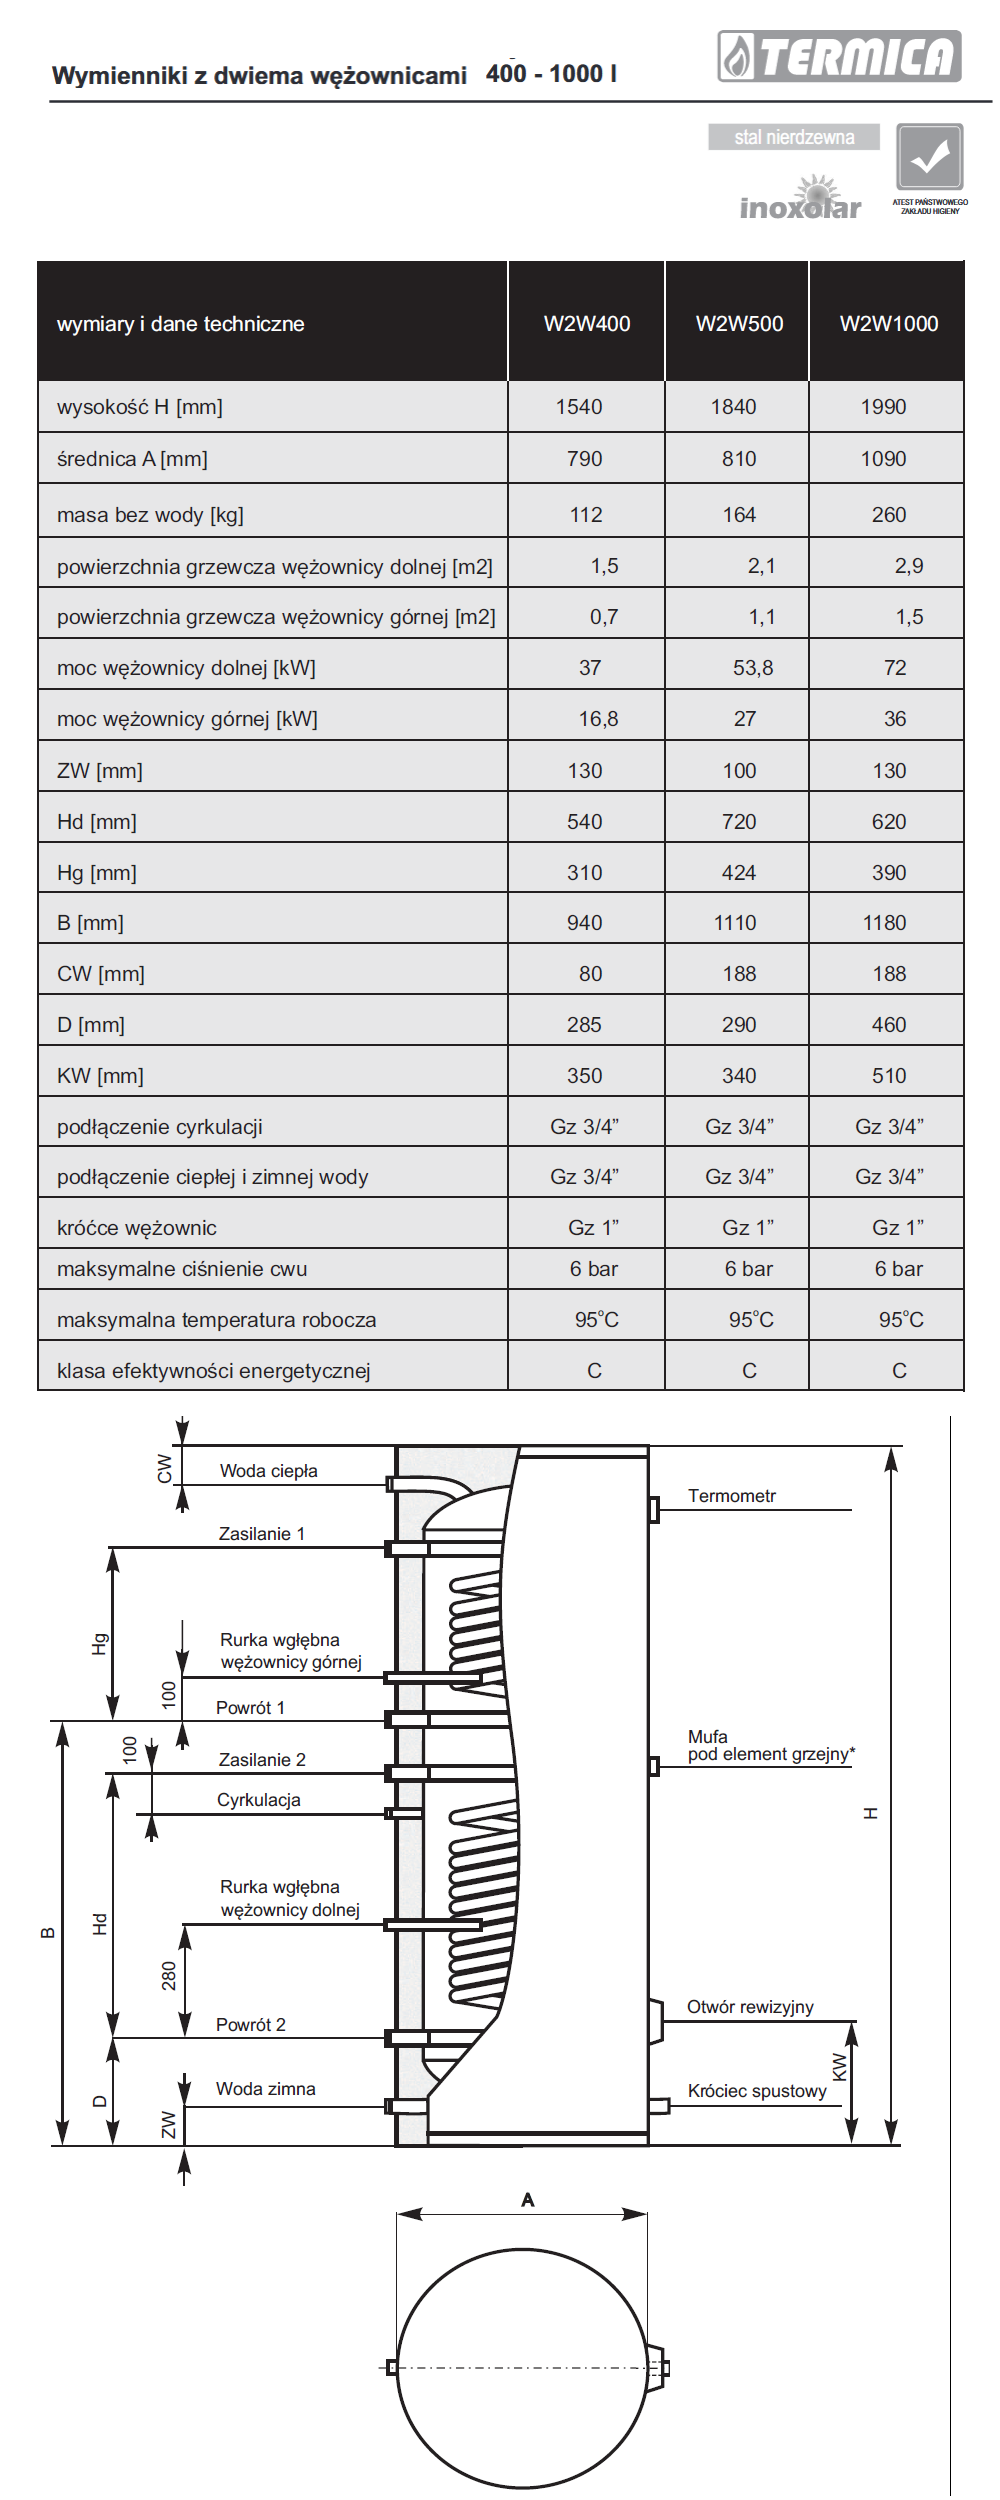 Parametry techniczne wymienników Termica W2W 400 - 1000 litrów